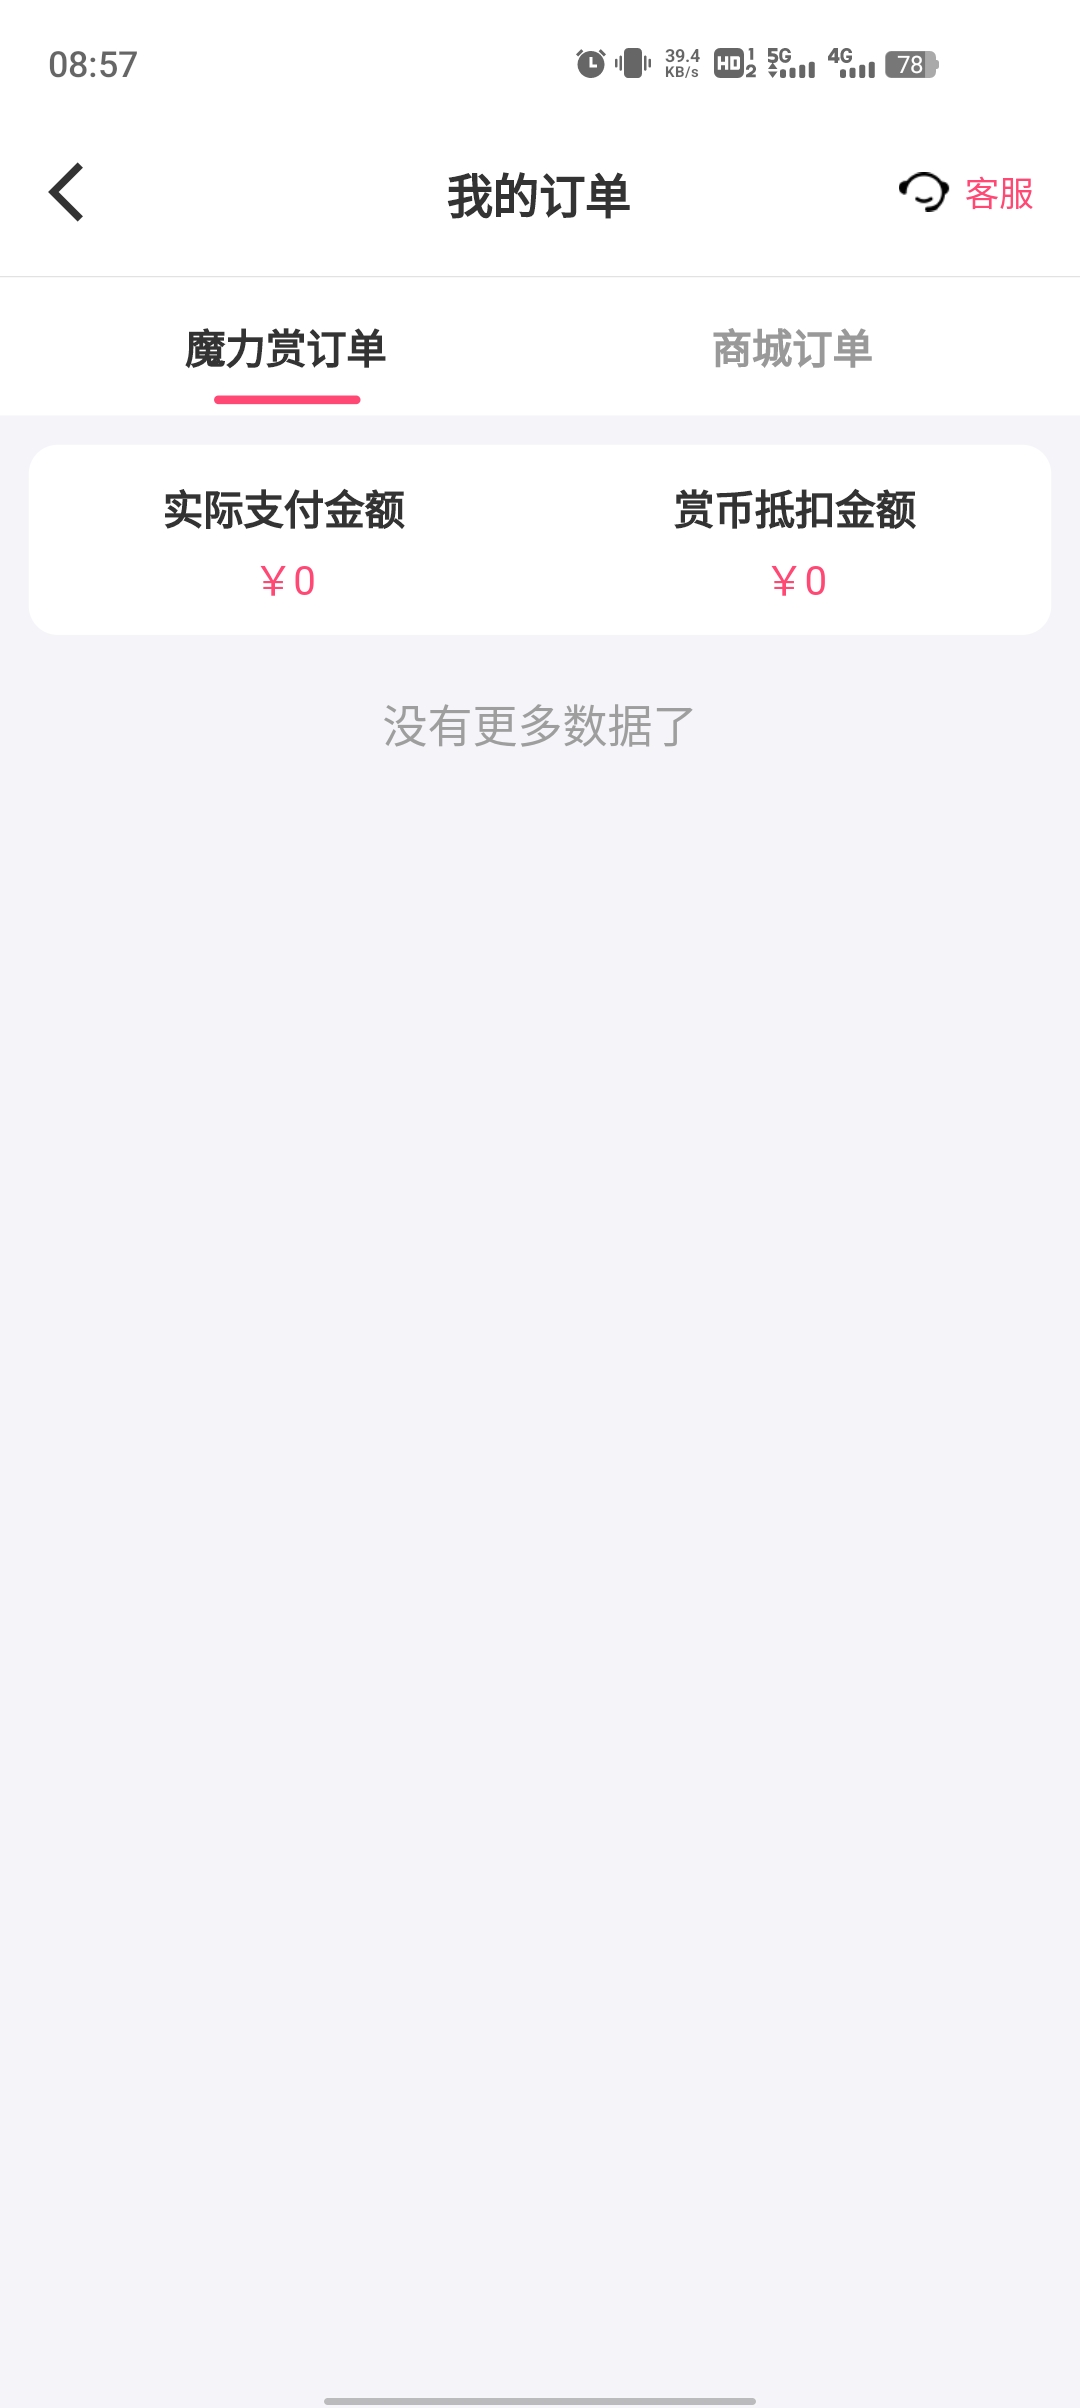 欧赏盲盒app官方版图1